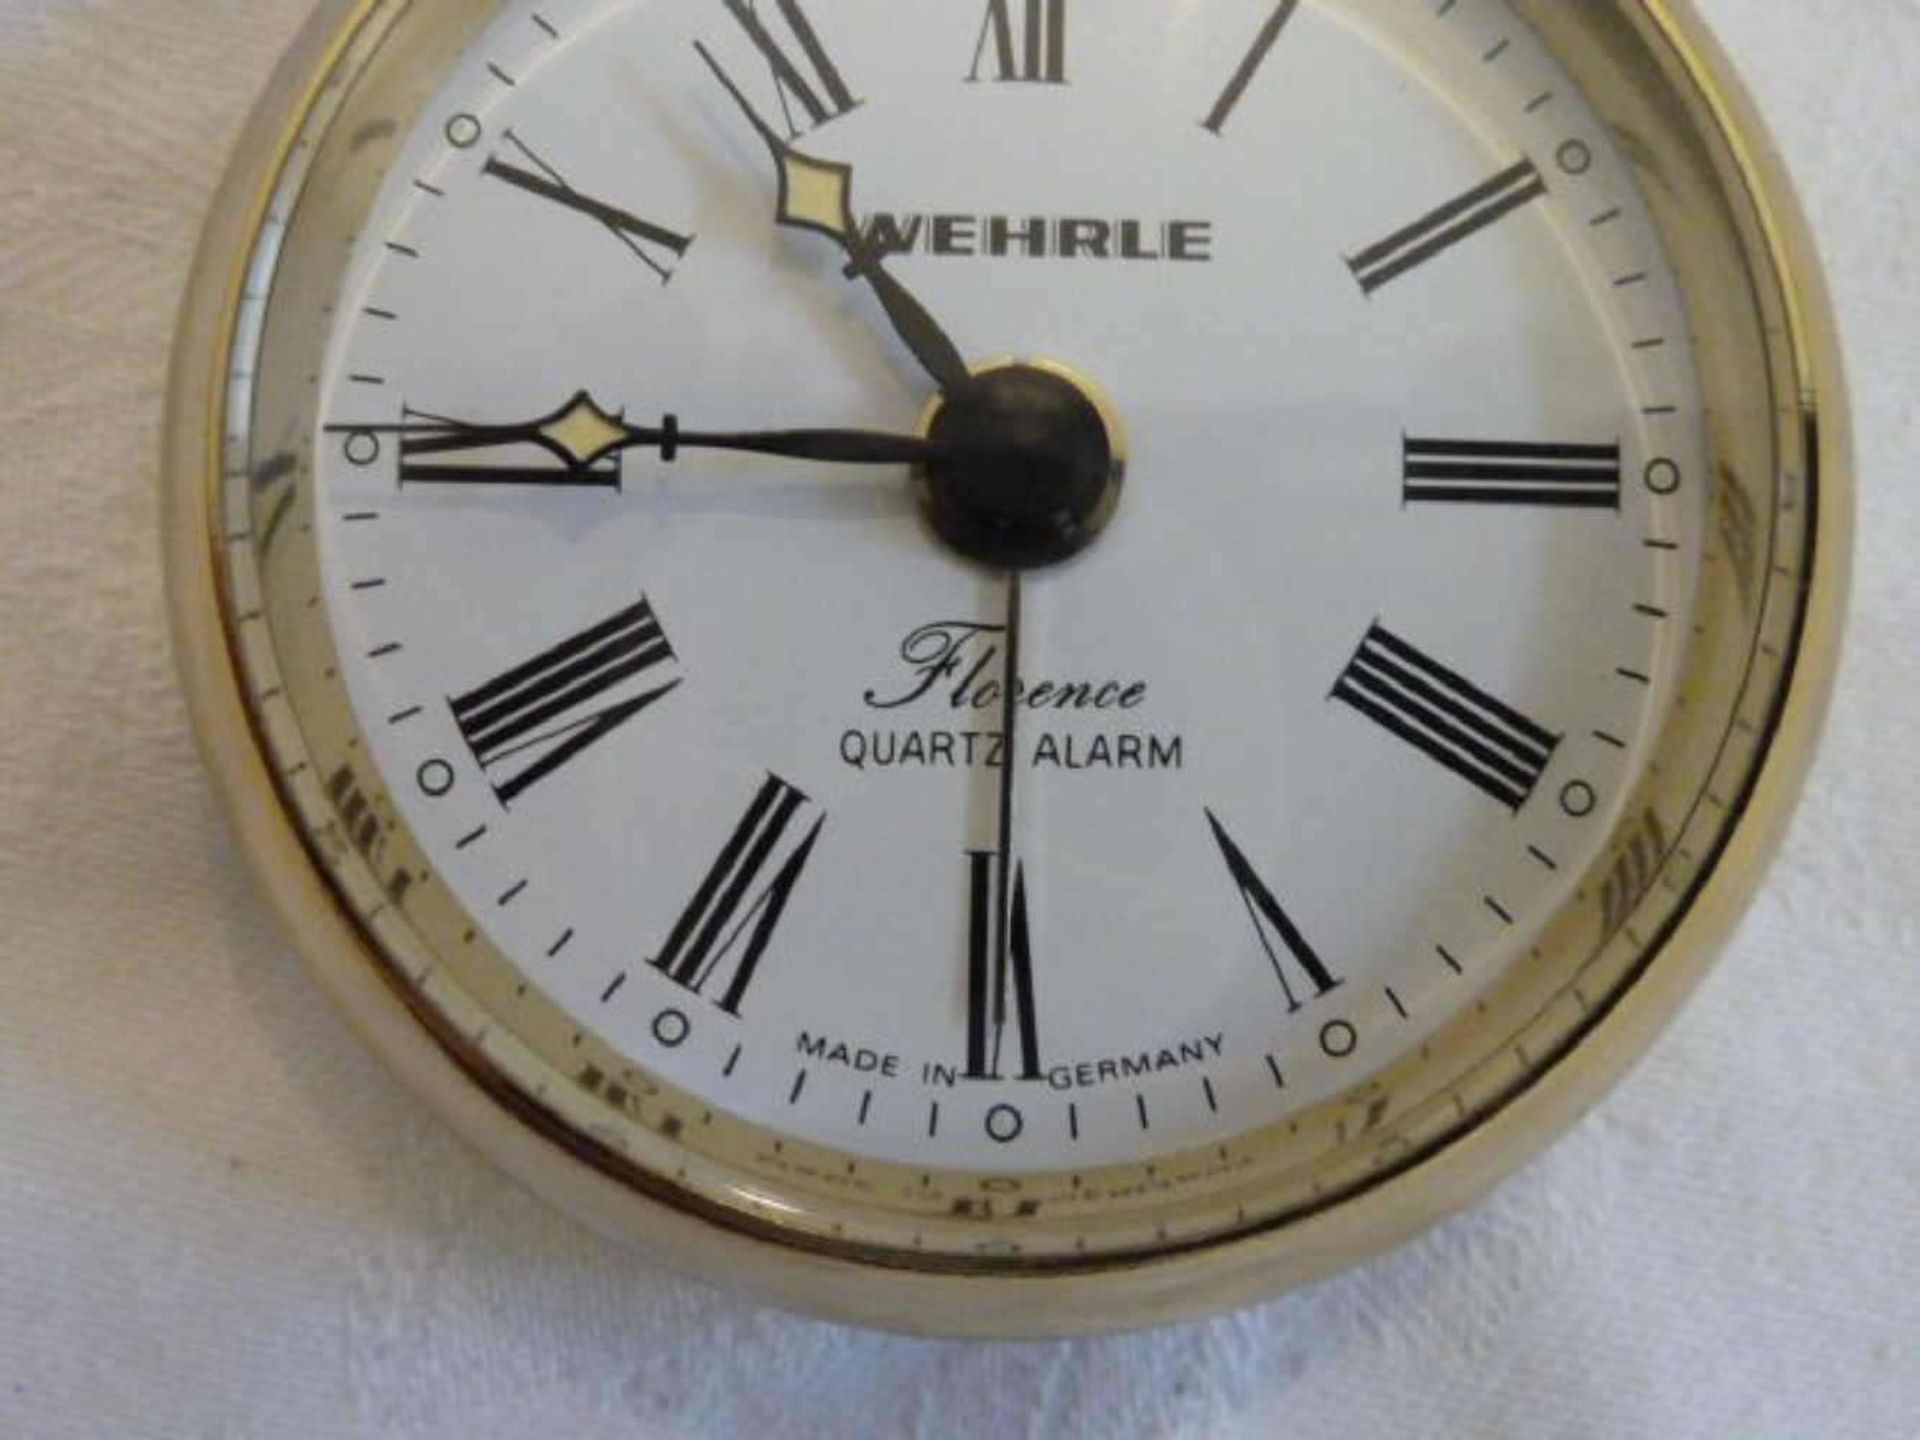 Wehrle Florence pocket watch, quartz alarm, brass. Clock with change function, 80s. New condition. - Bild 3 aus 3